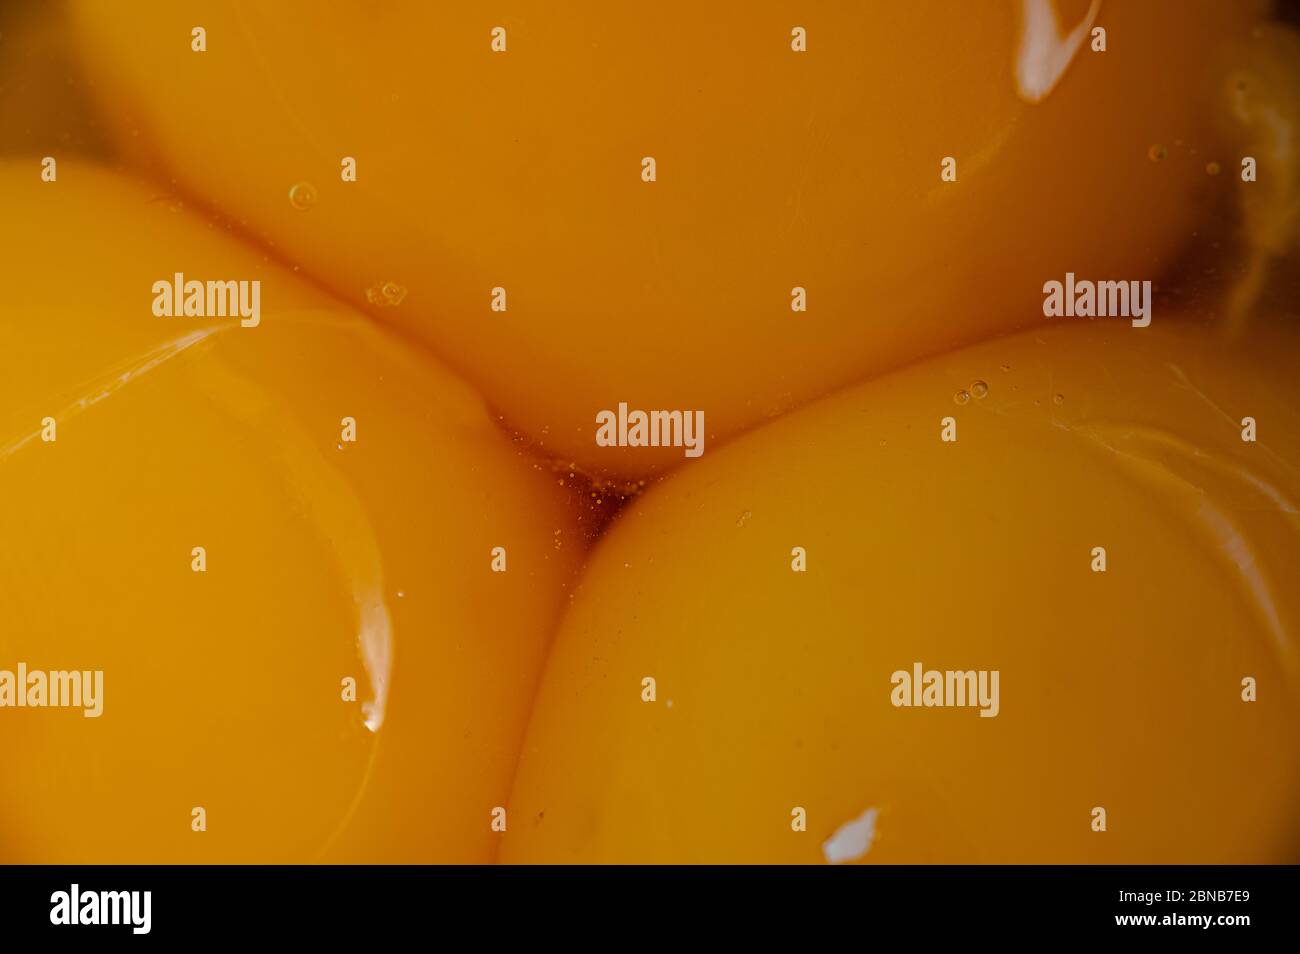 Gros plan ogros plan de jaunes d'œufs frais biologiques Banque D'Images